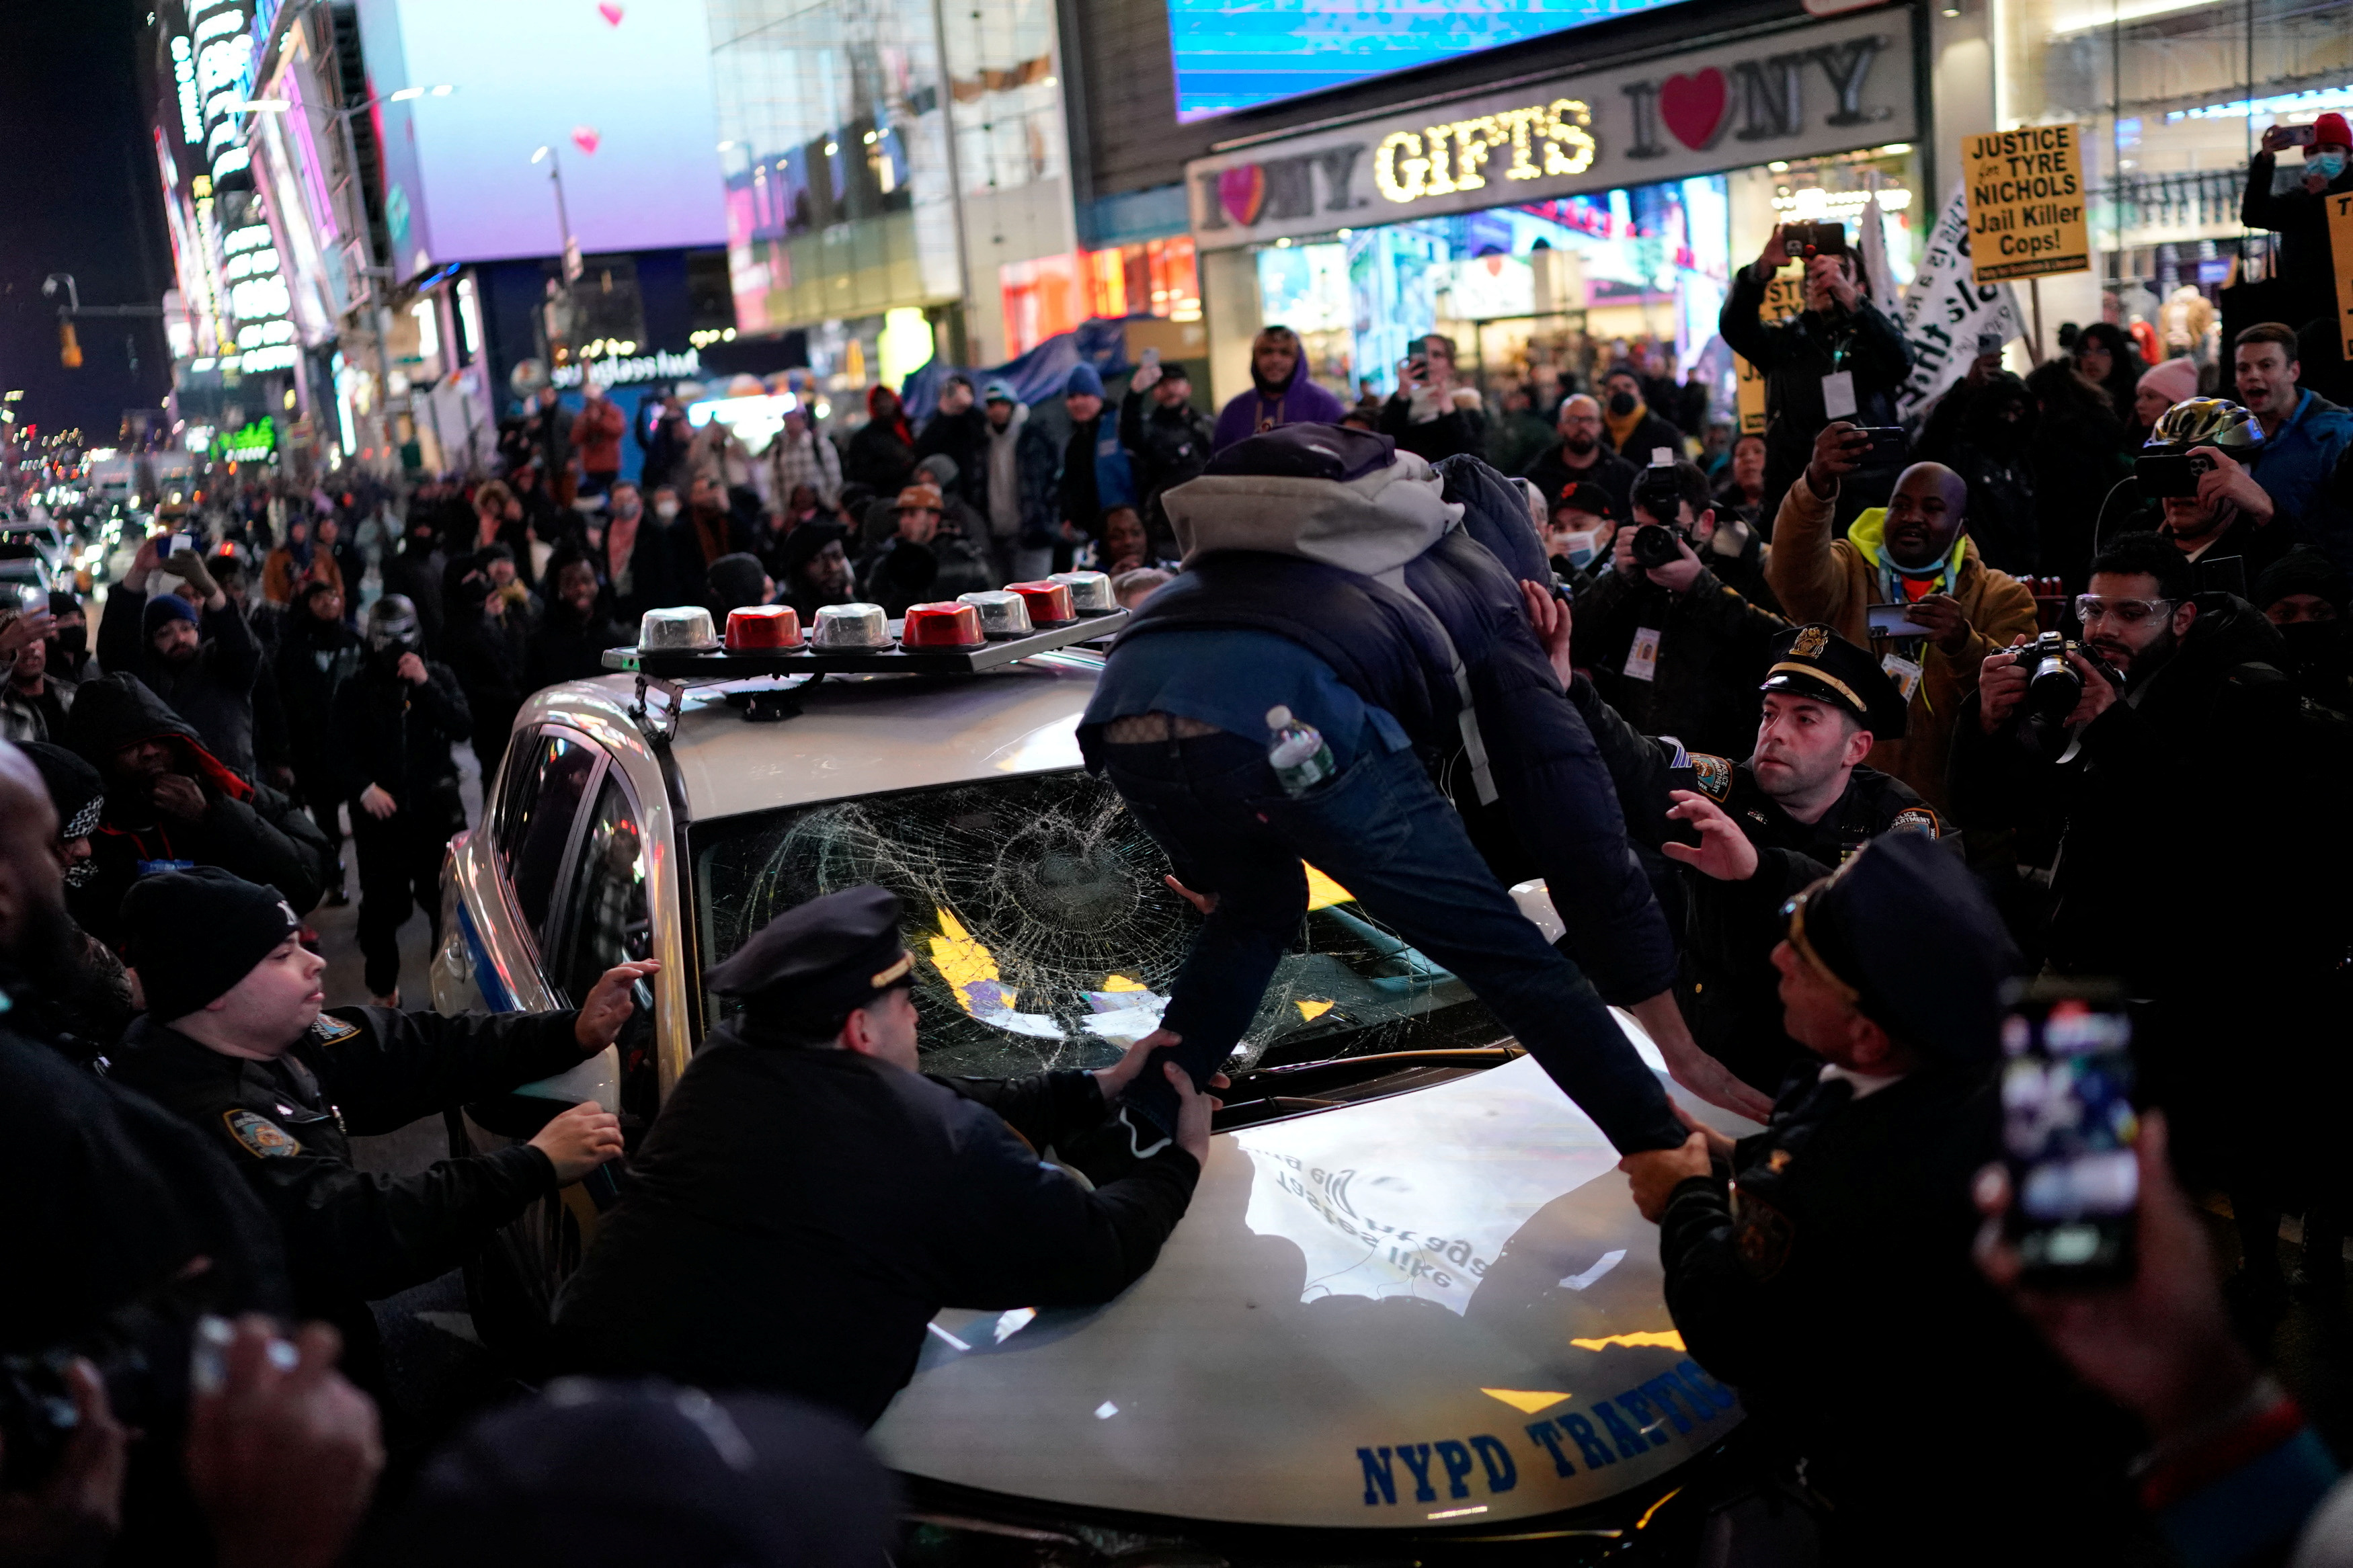 Las protestas en Nueva York comenzaron desde antes de la publicación de los videos de la golpiza contra el joven afroamericano. (REUTERS)